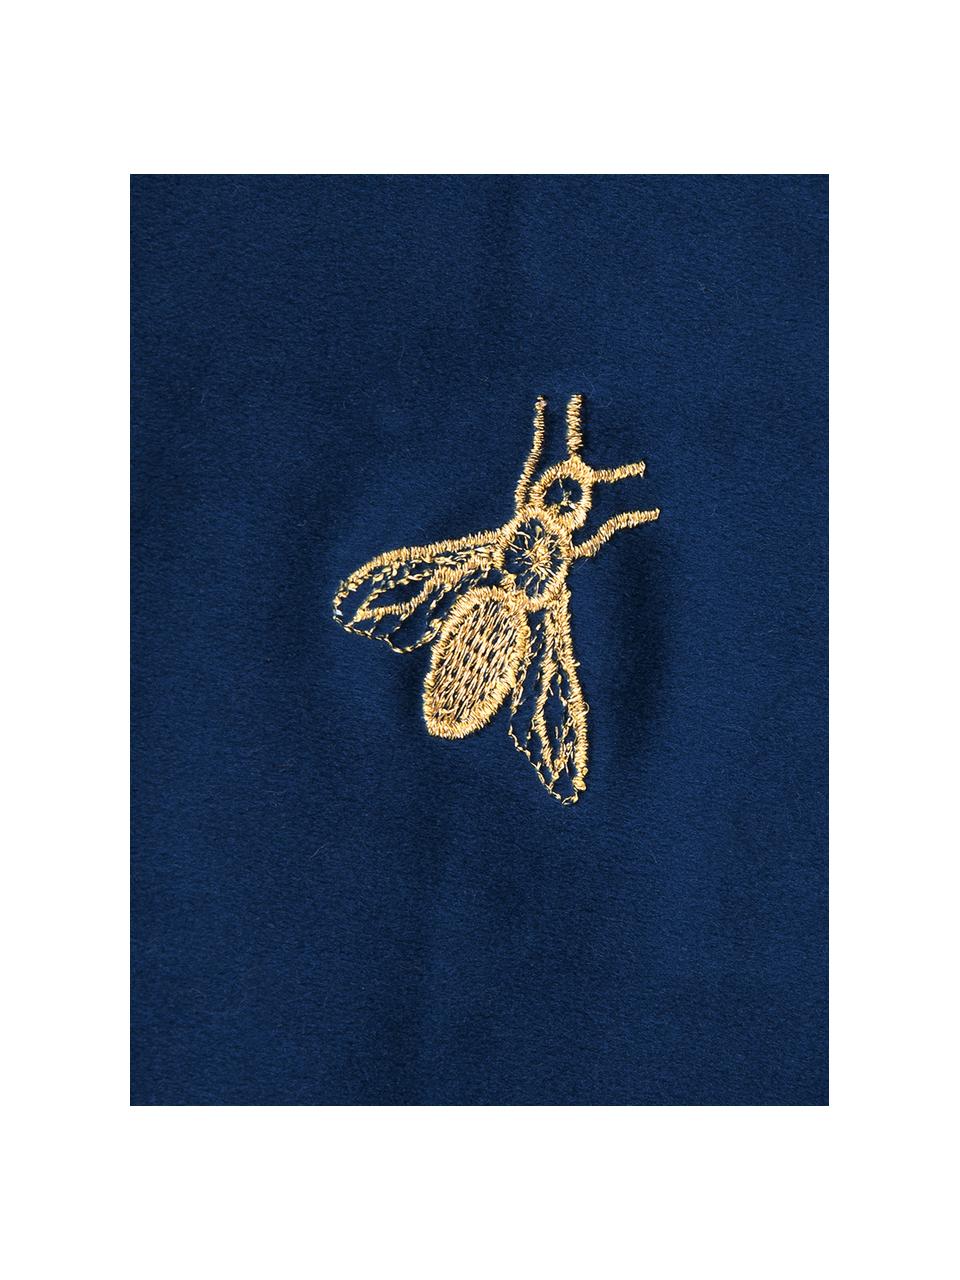 Geborduurde fluwelen kussenhoes Nora in blauw /goudkleur, 100% polyester fluweel, Marineblauw, 45 x 45 cm